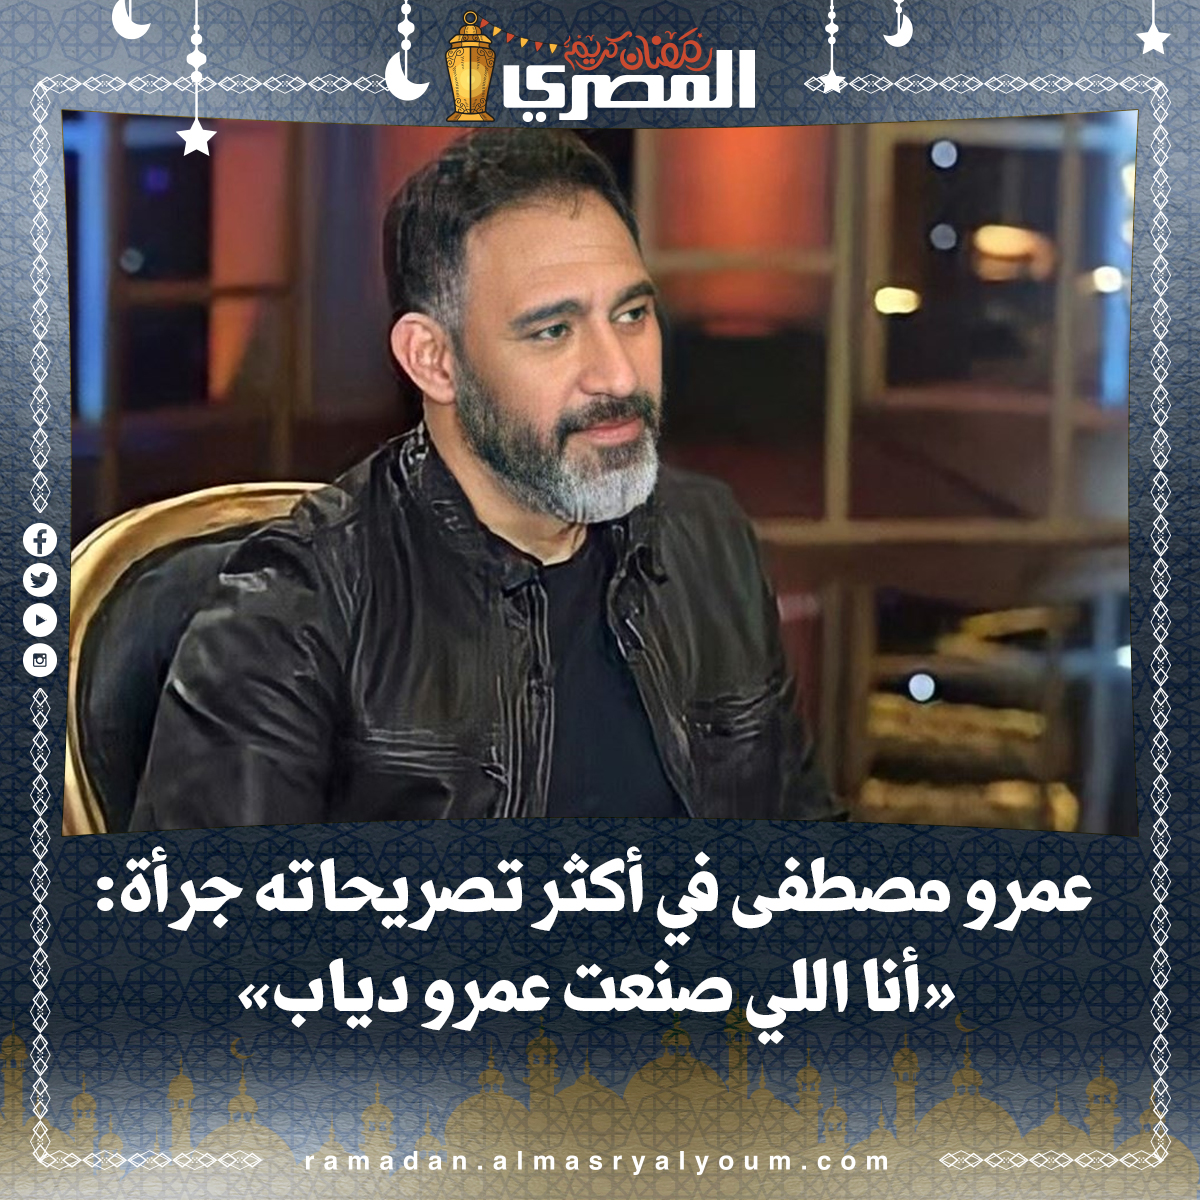 عمرو مصطفى في أكثر تصريحاته جرأة «أنا اللي صنعت عمرو دياب»